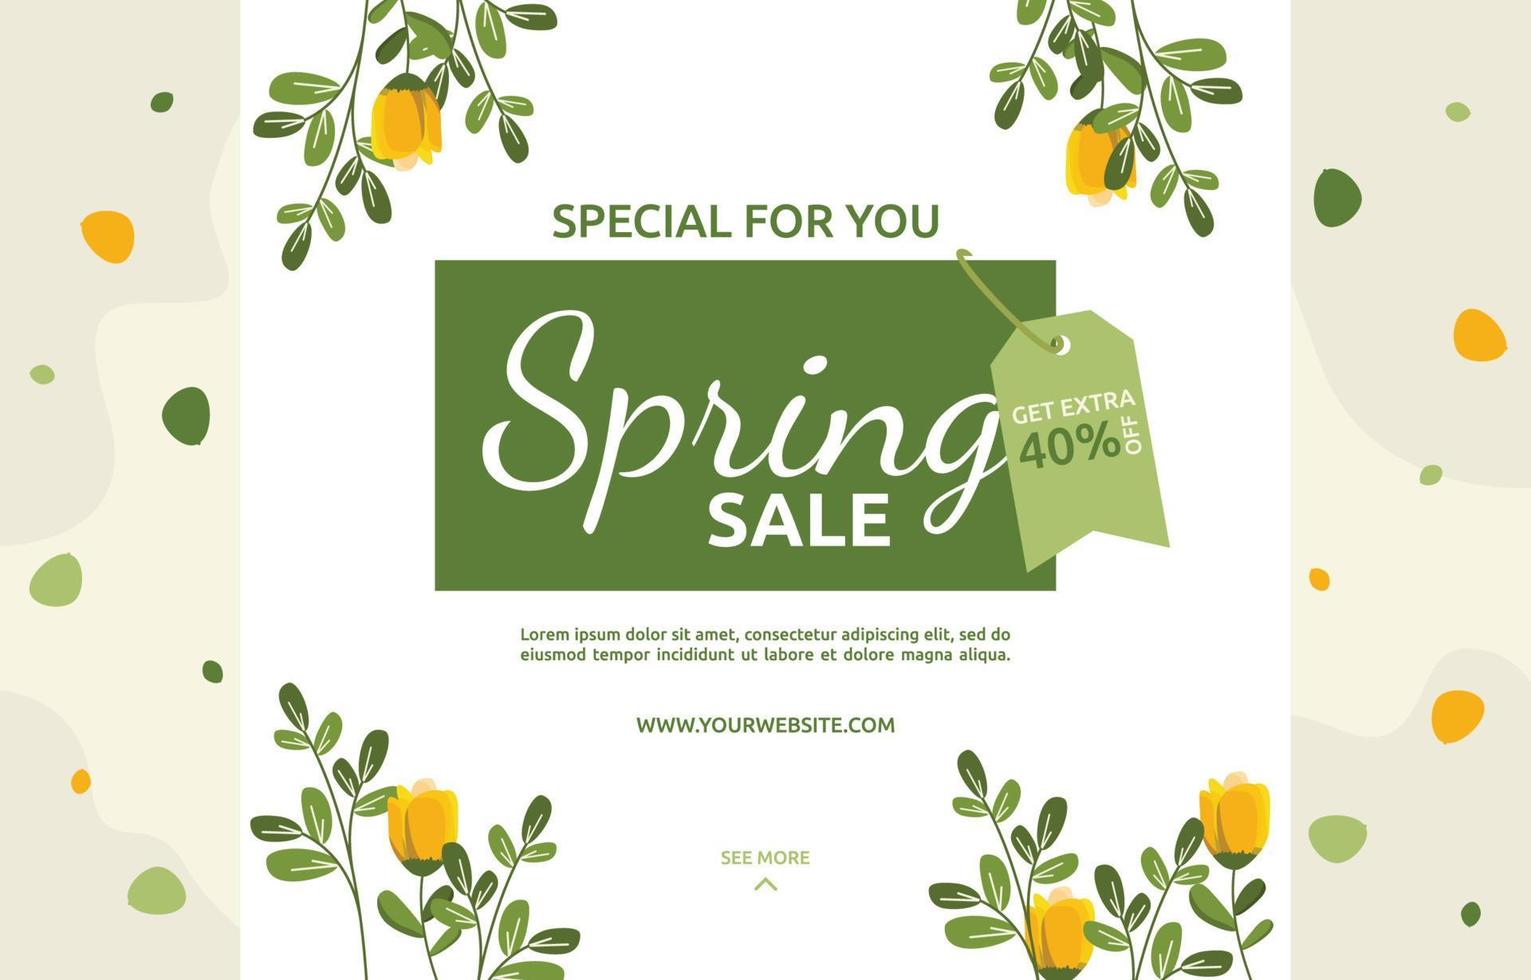 venda especial de primavera flor floral temporada marketing banner negócio vetor